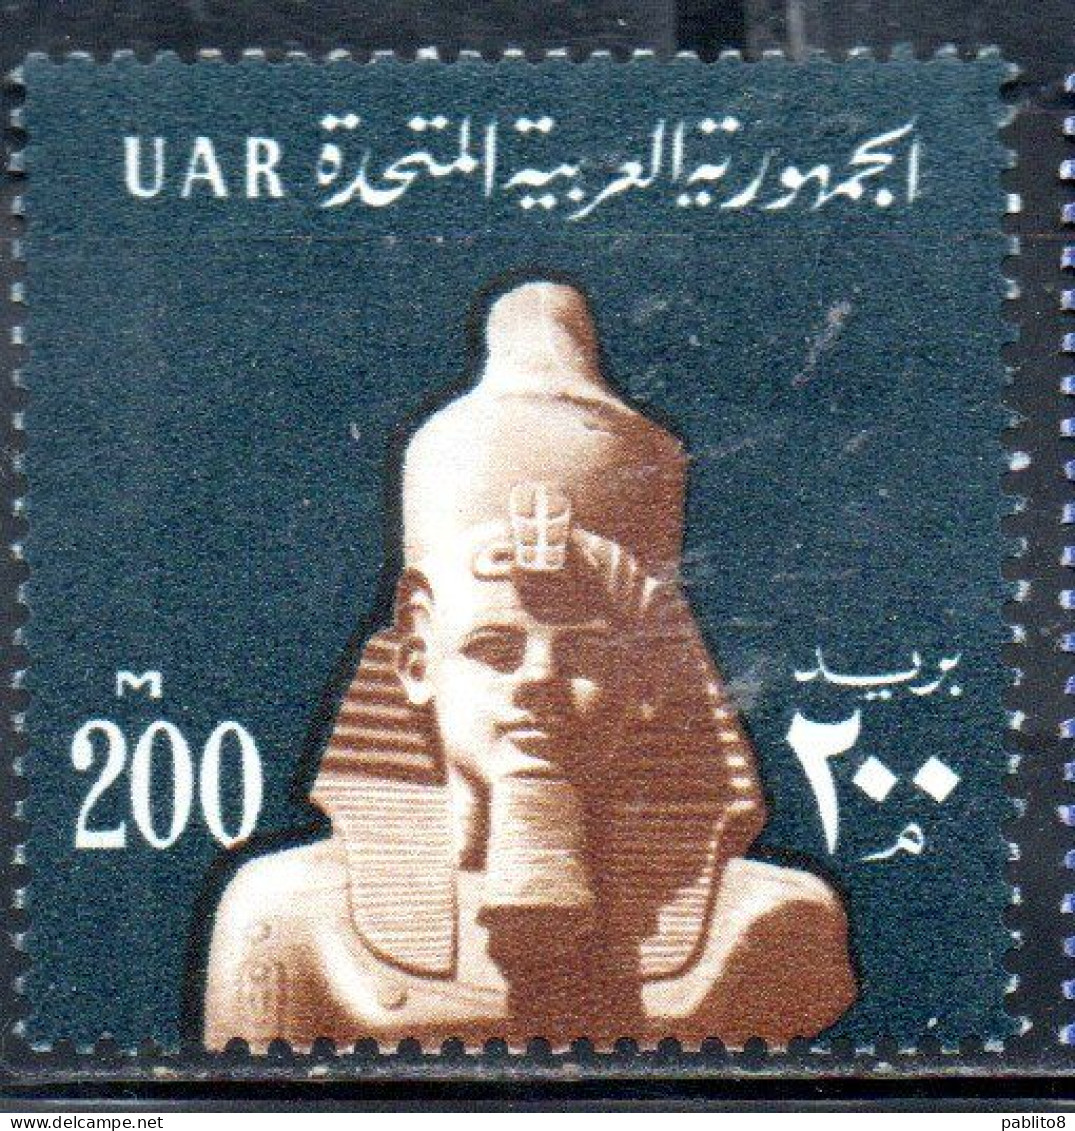 UAR EGYPT EGITTO 1964 1967 HEAD C.F. RAMSES II 200m MNH - Unused Stamps